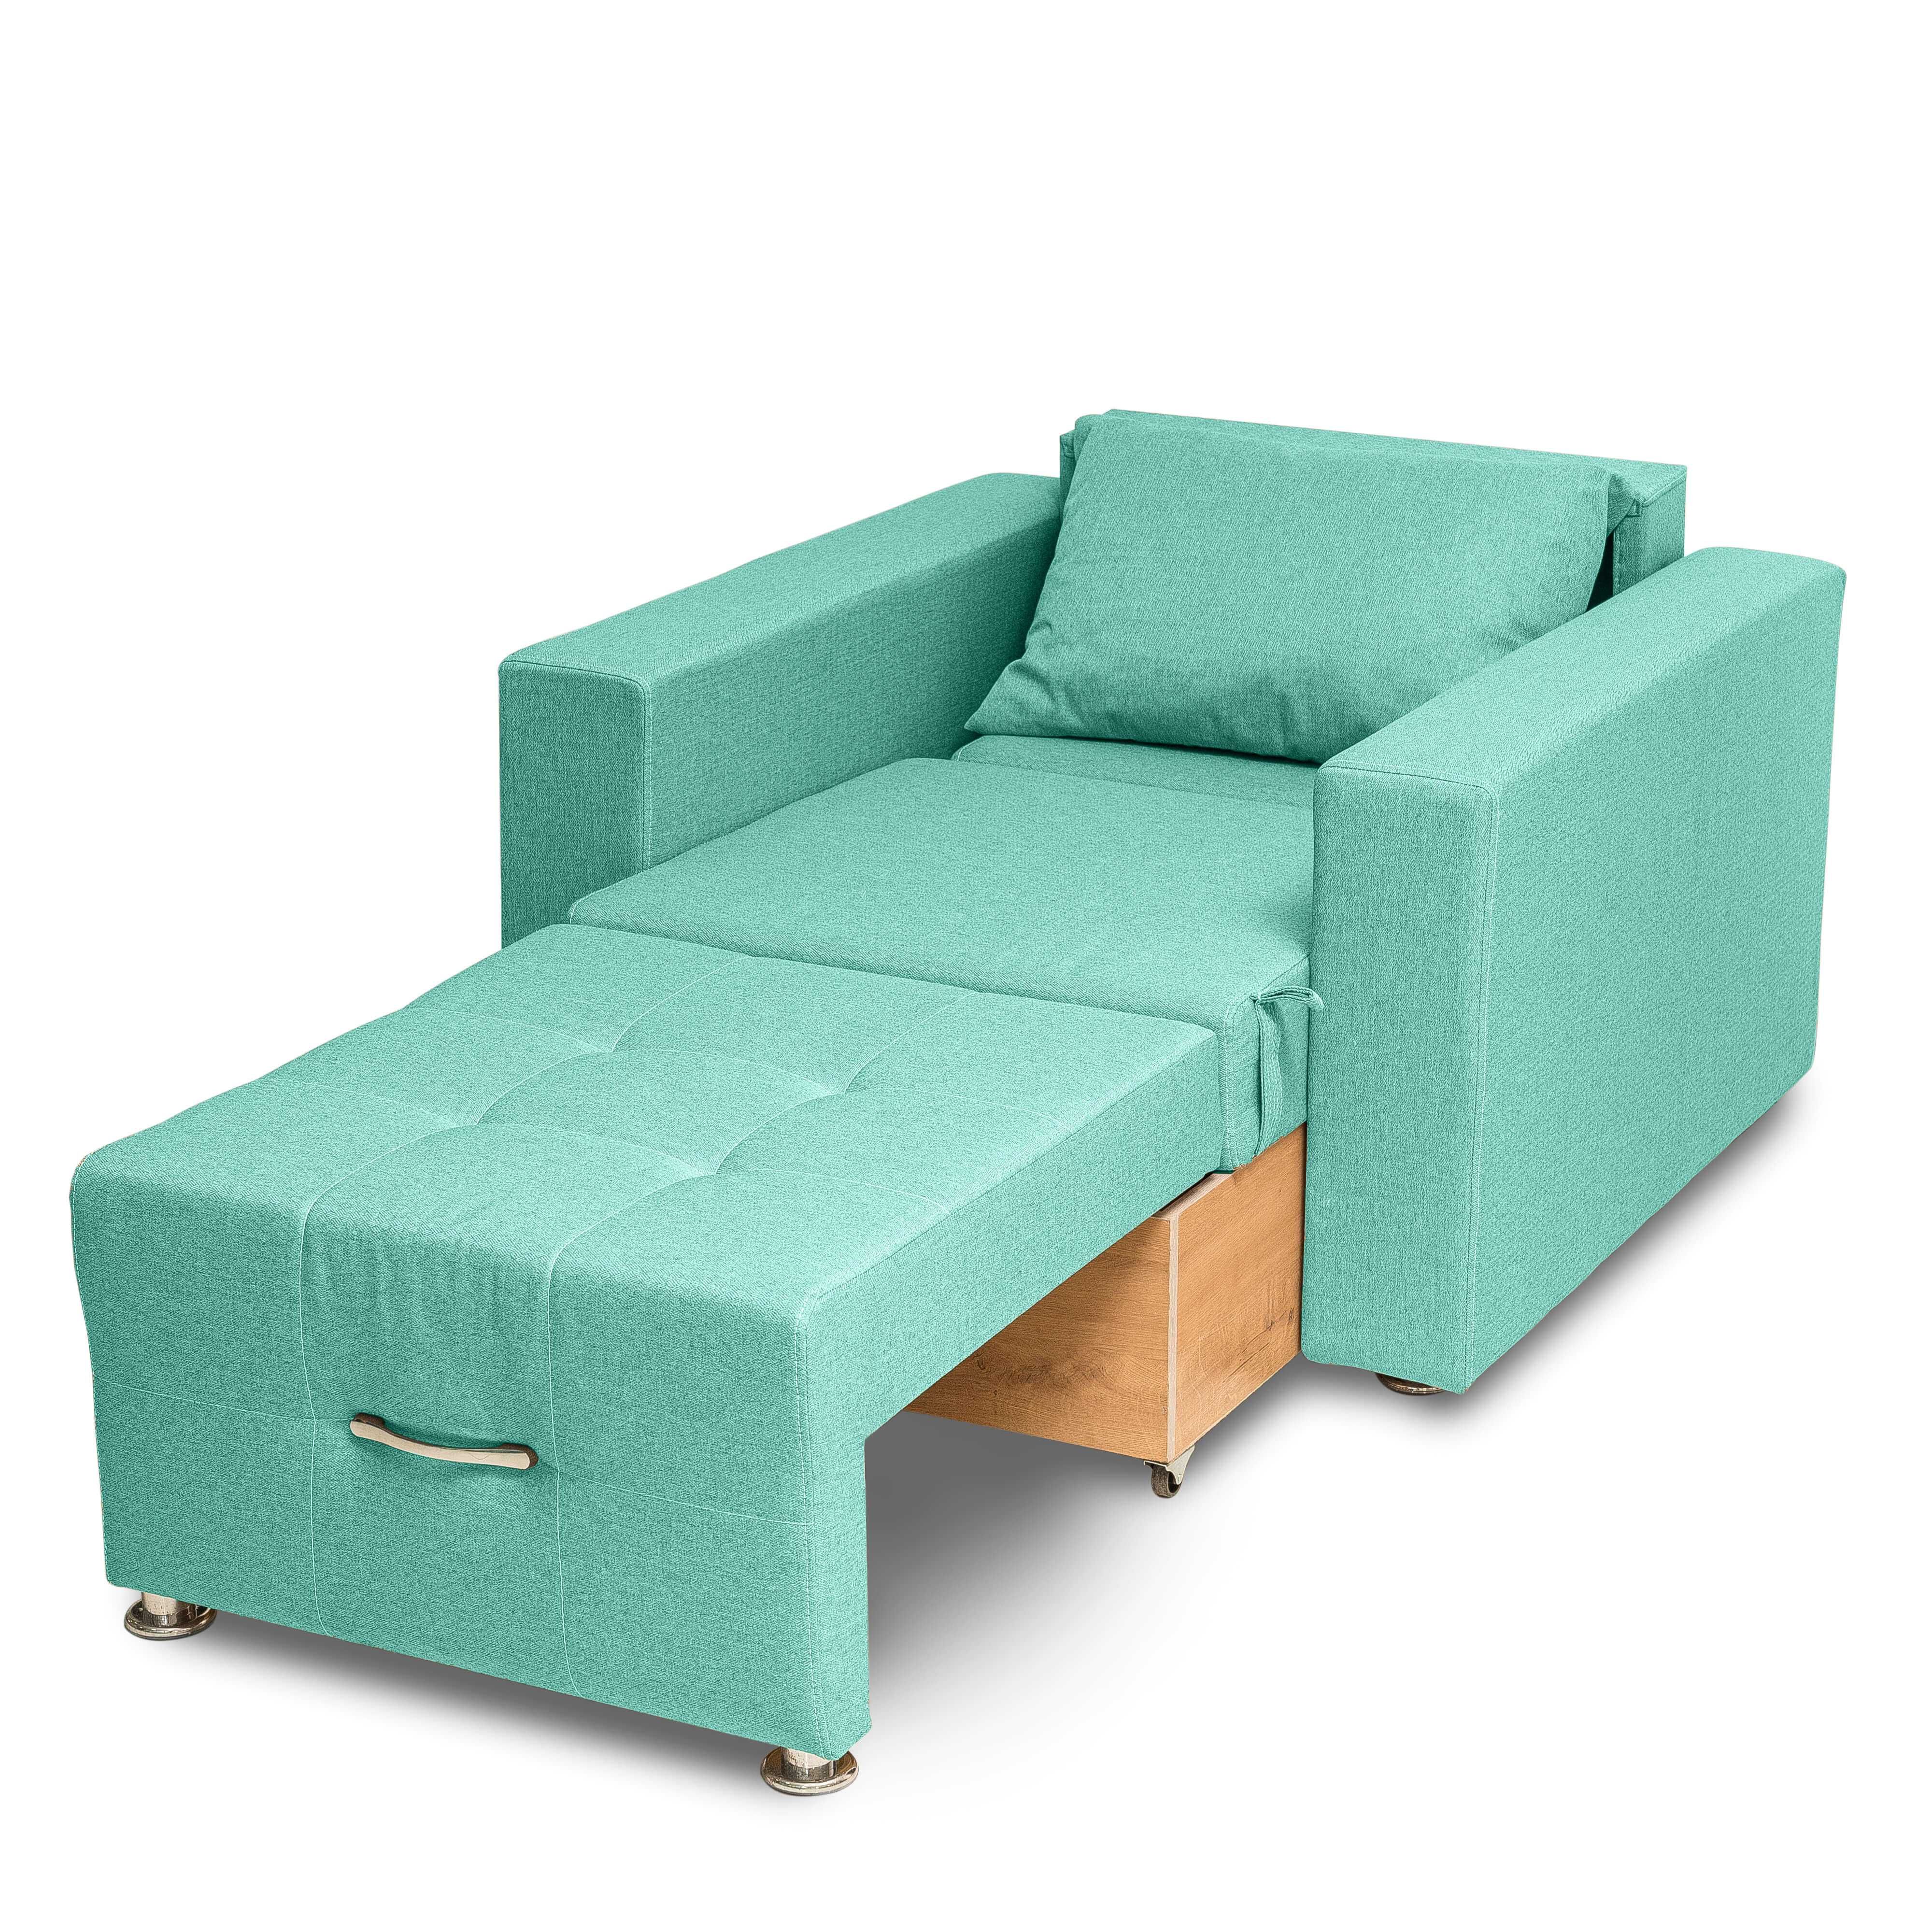 Атлант бирюзовый кресло-кровать диван тахта Доставка бесплатно